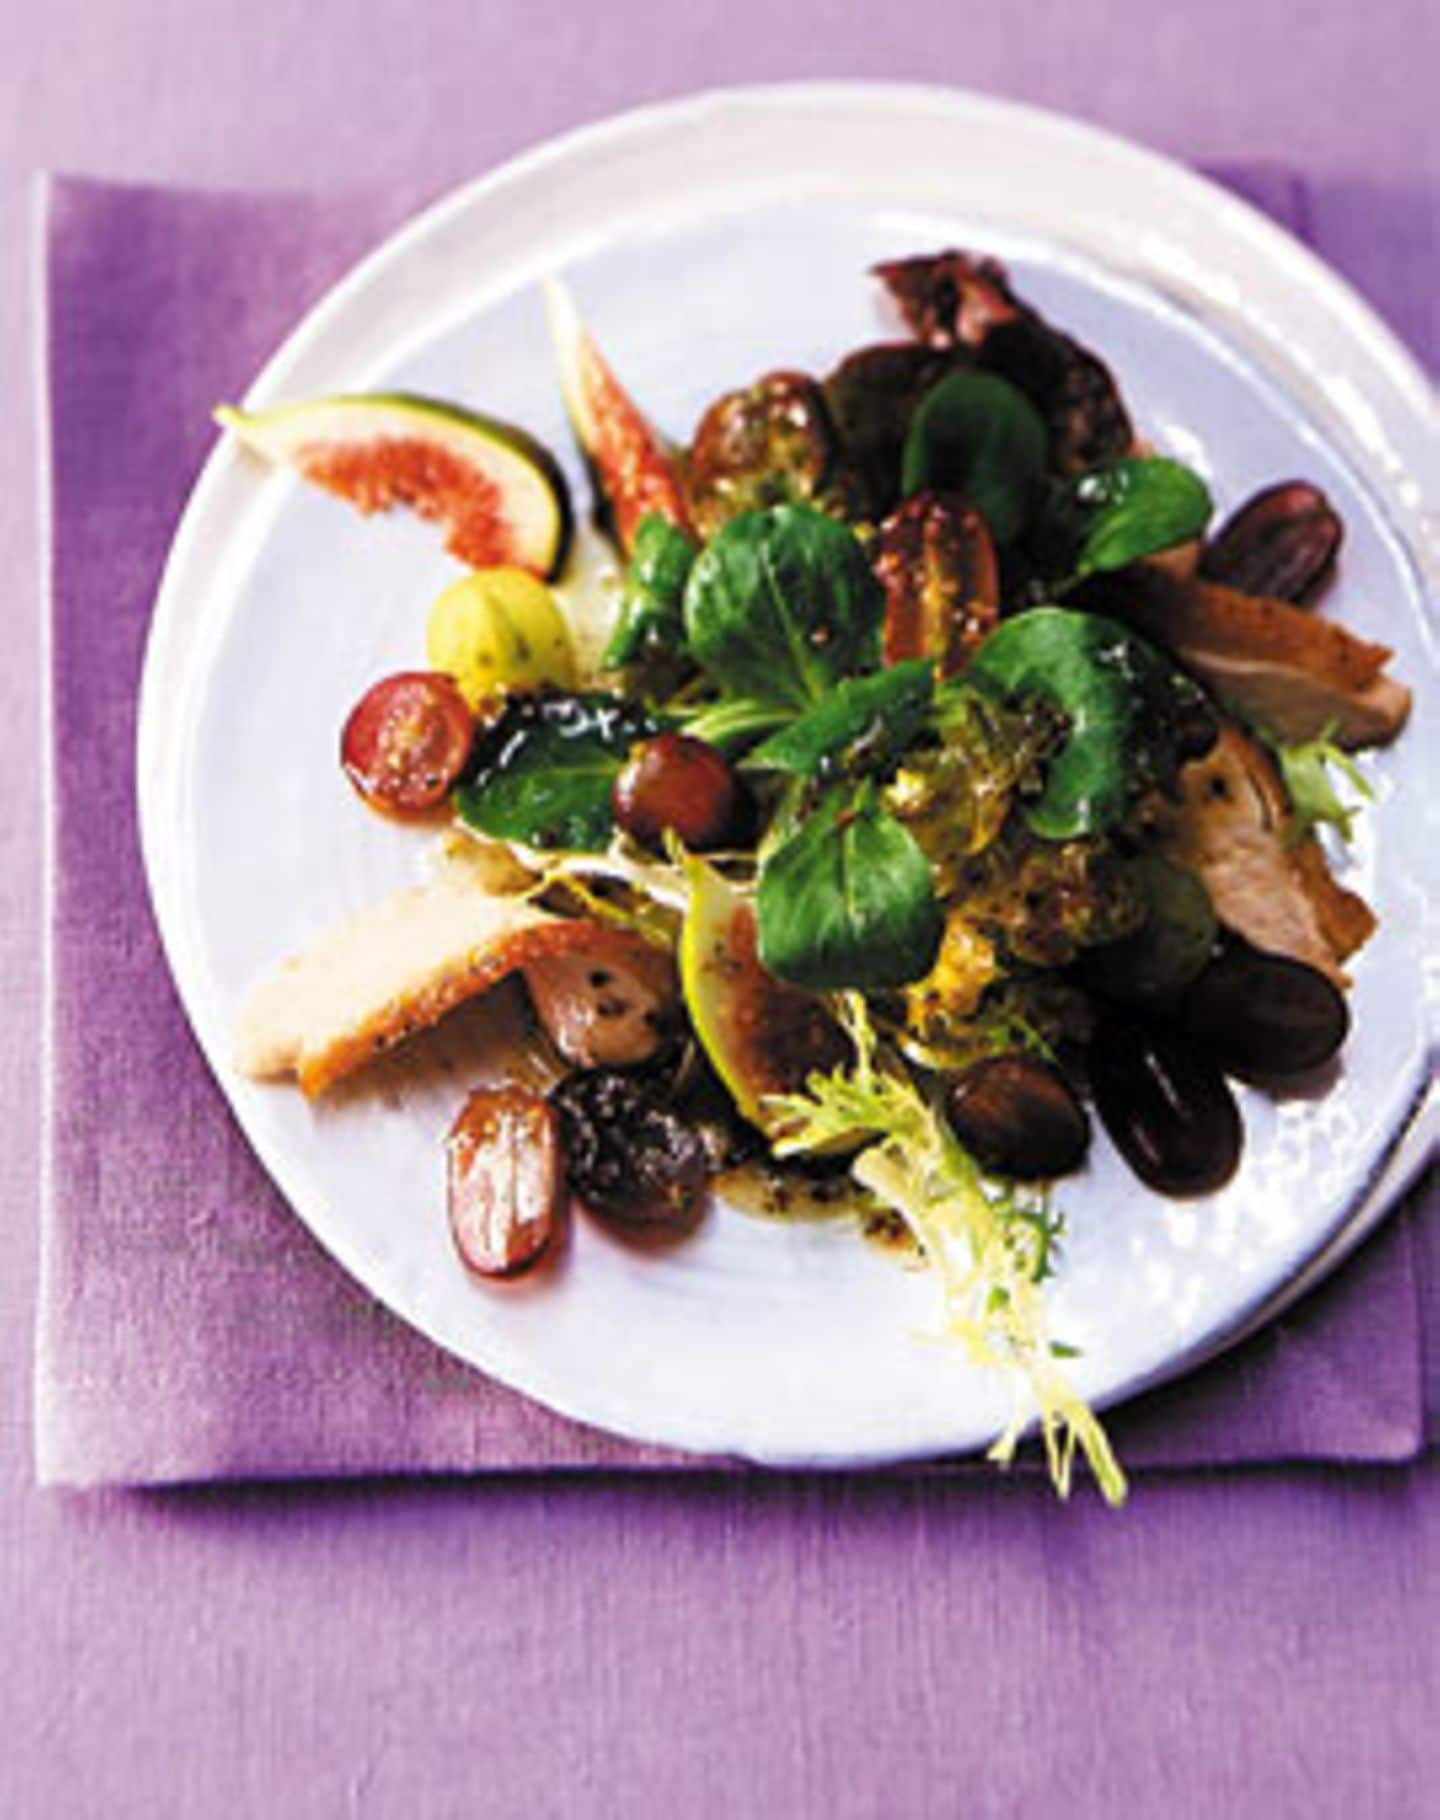 Rezept: Weintrauben-Feigen-Salat mit Ahornsirup und gebratener Perlhuhnbrust